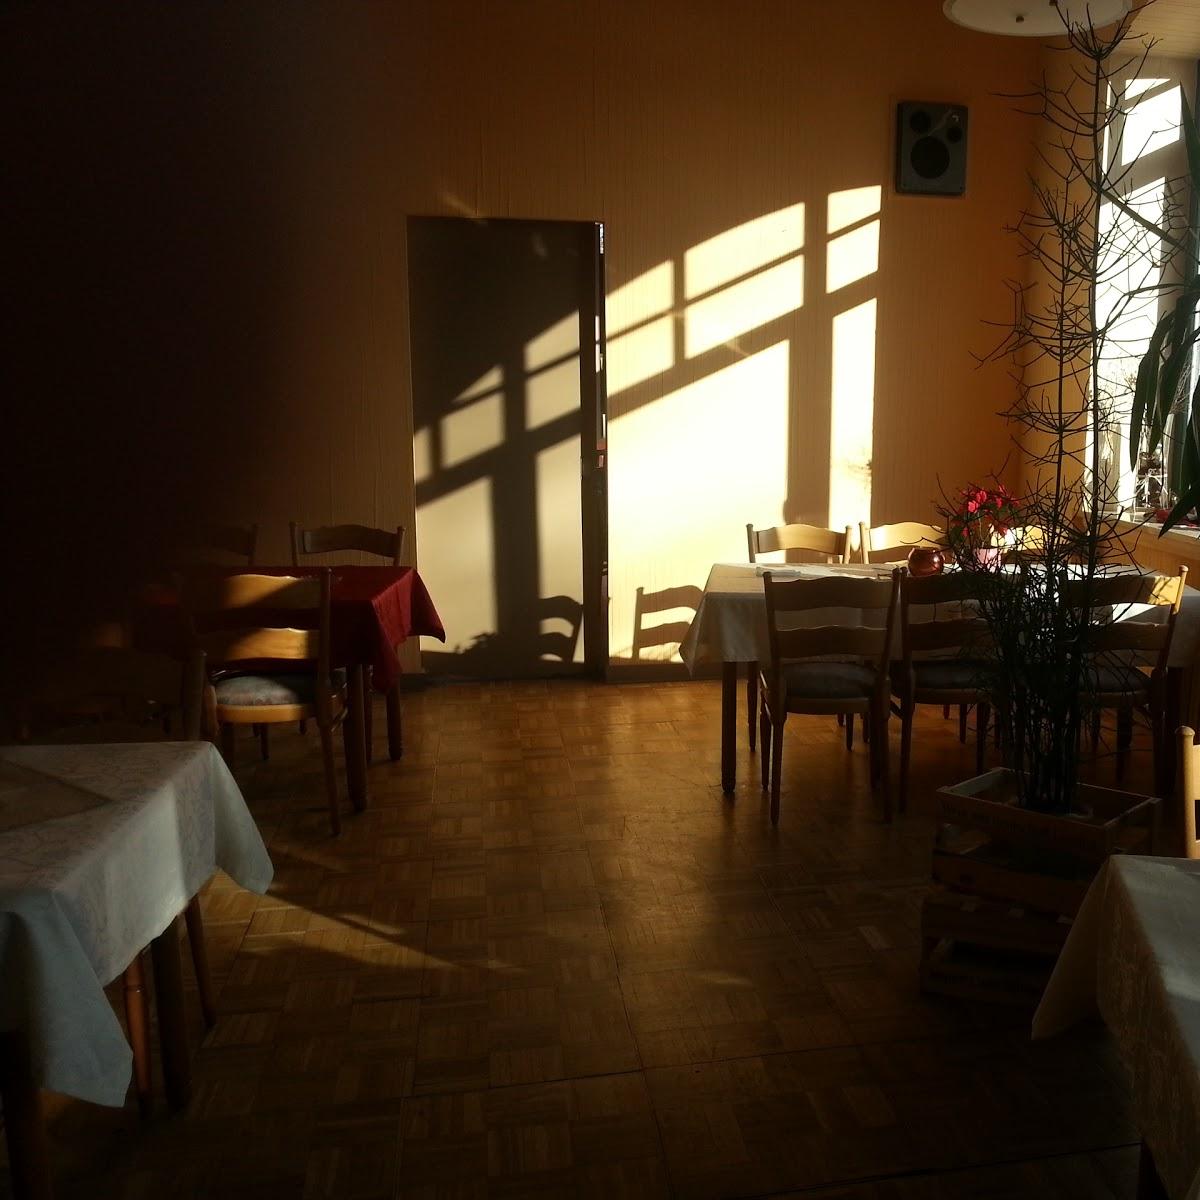 Restaurant "Gaststätte Bürgerhof" in Bleicherode